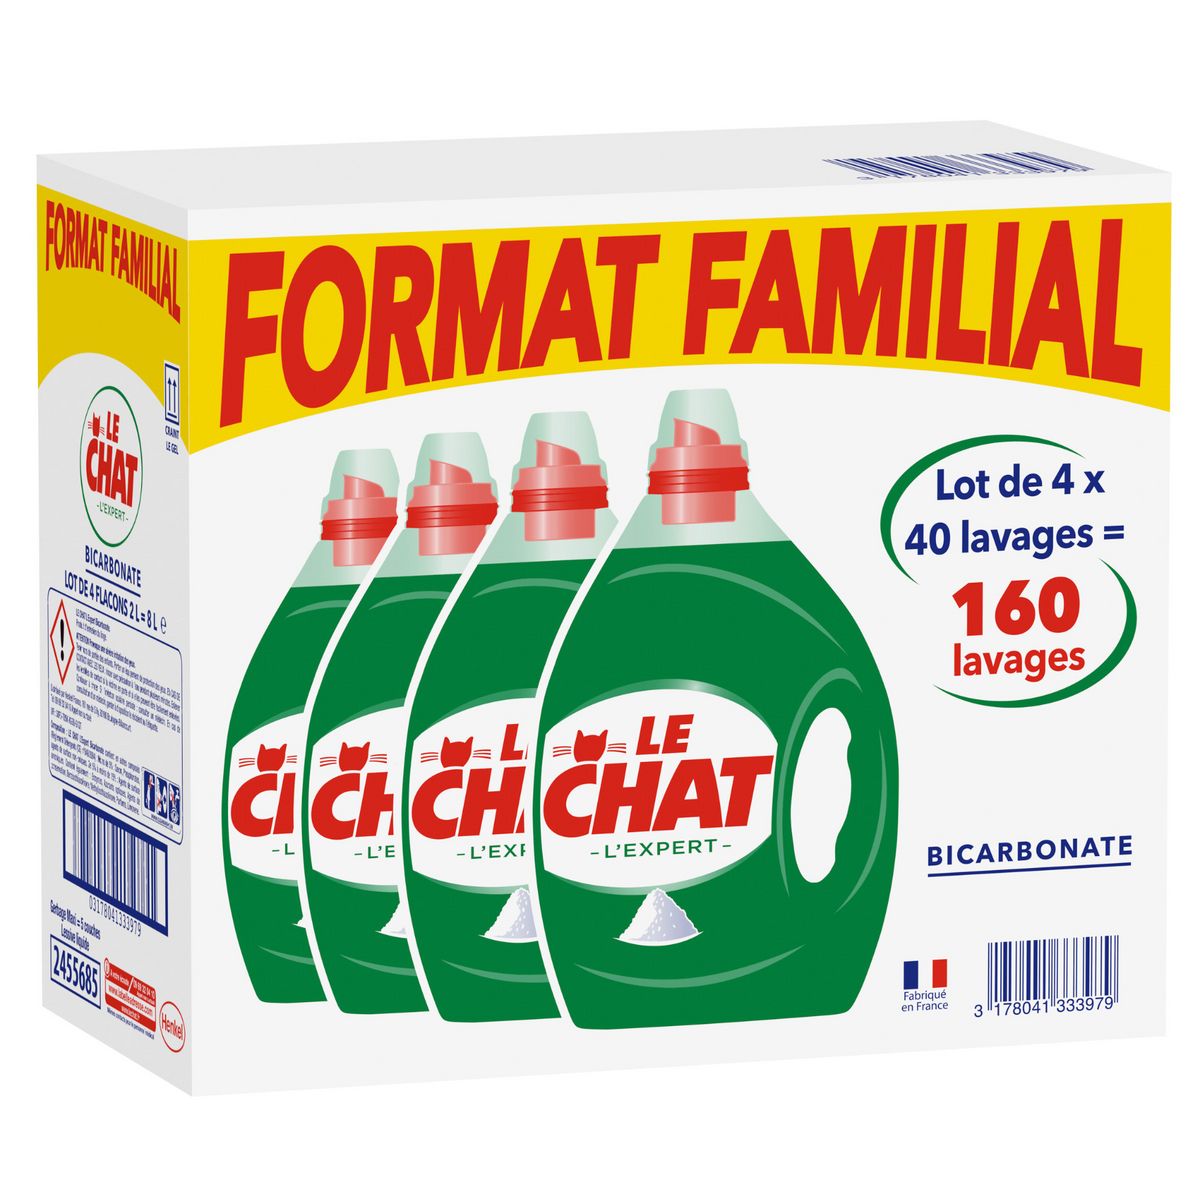 LE CHAT Lessive liquide au bicarbonate format familial 160 lavages 4x2l